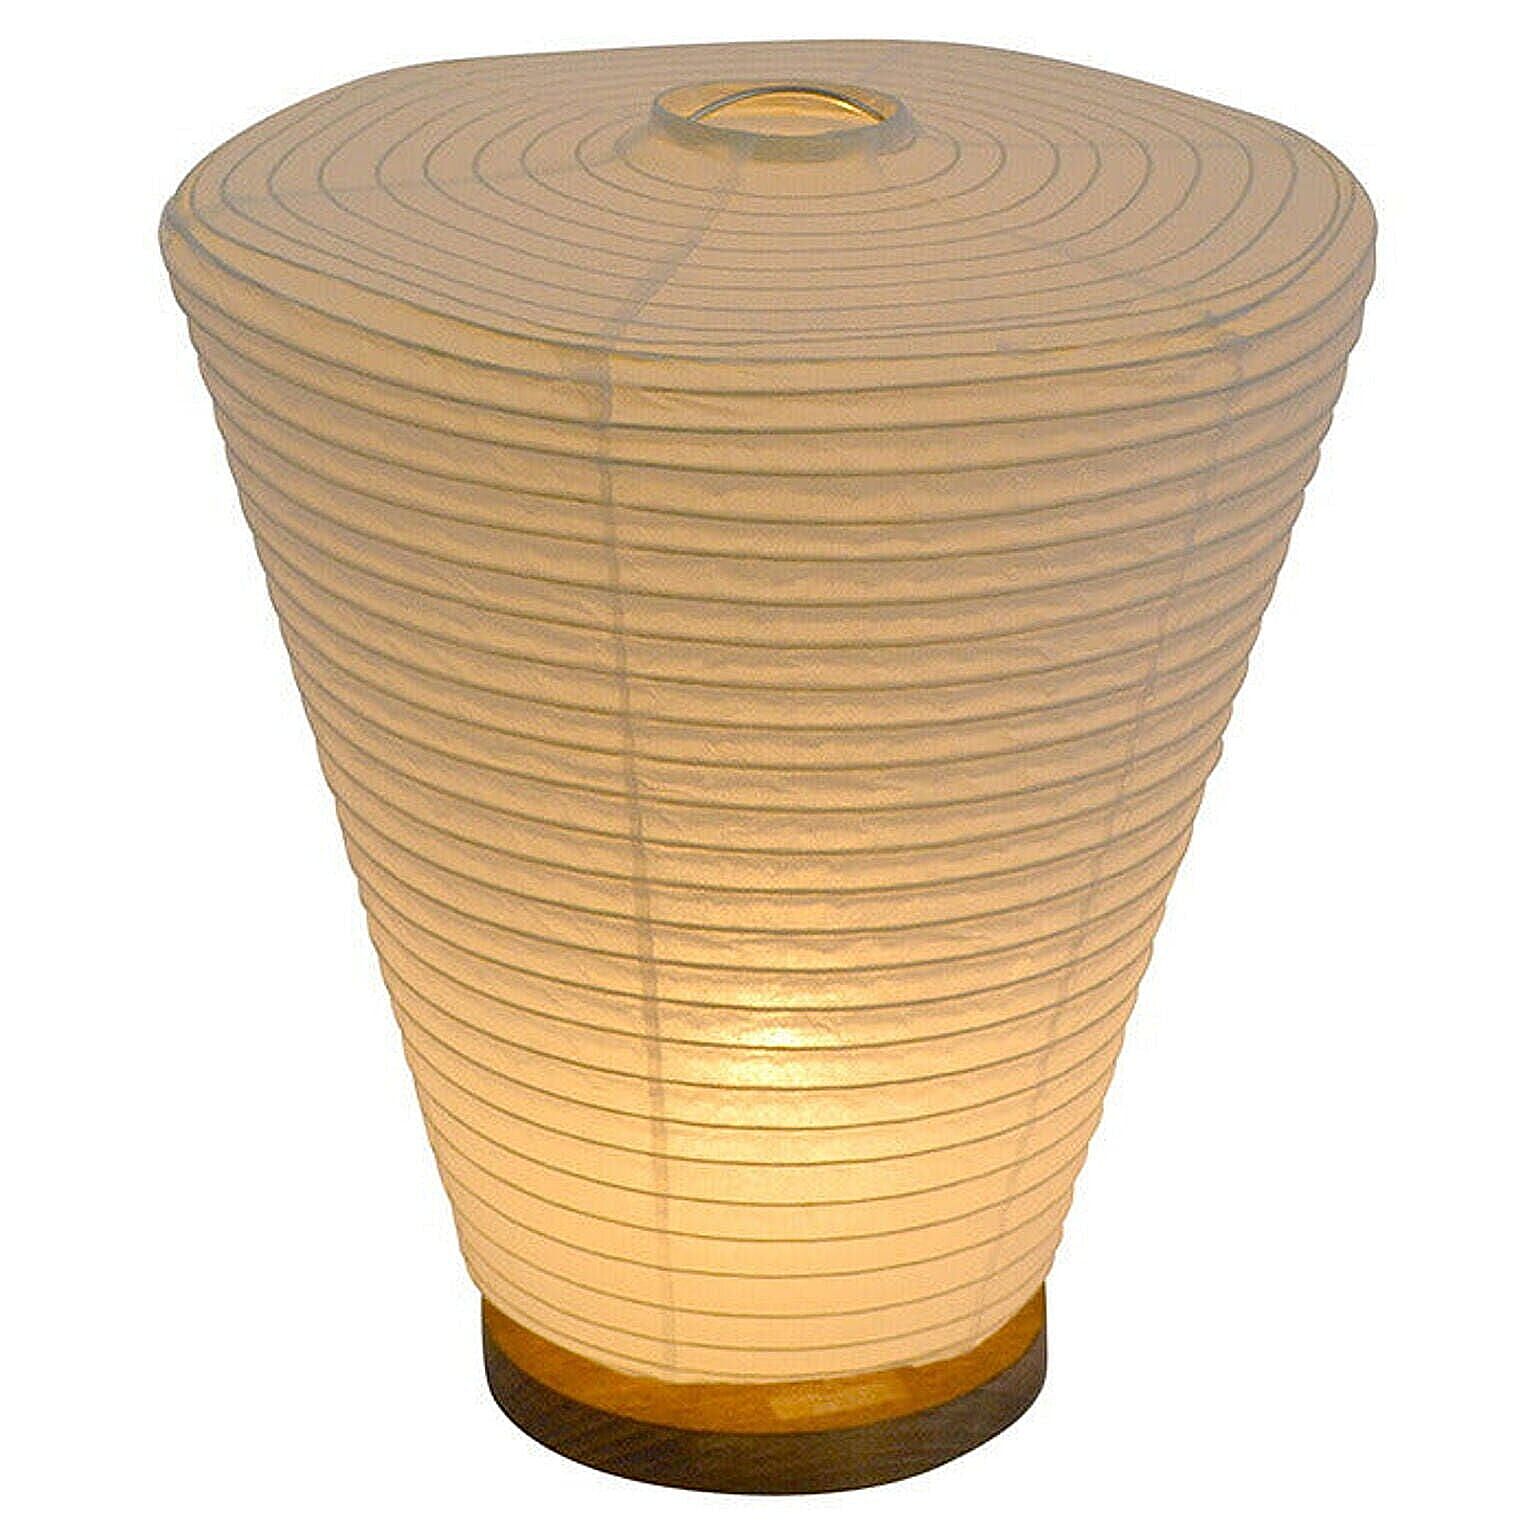 彩光デザイン 和紙テーブルライト 電球付属 本美濃紙サイズ 幅240x奥行240x高さ275mm